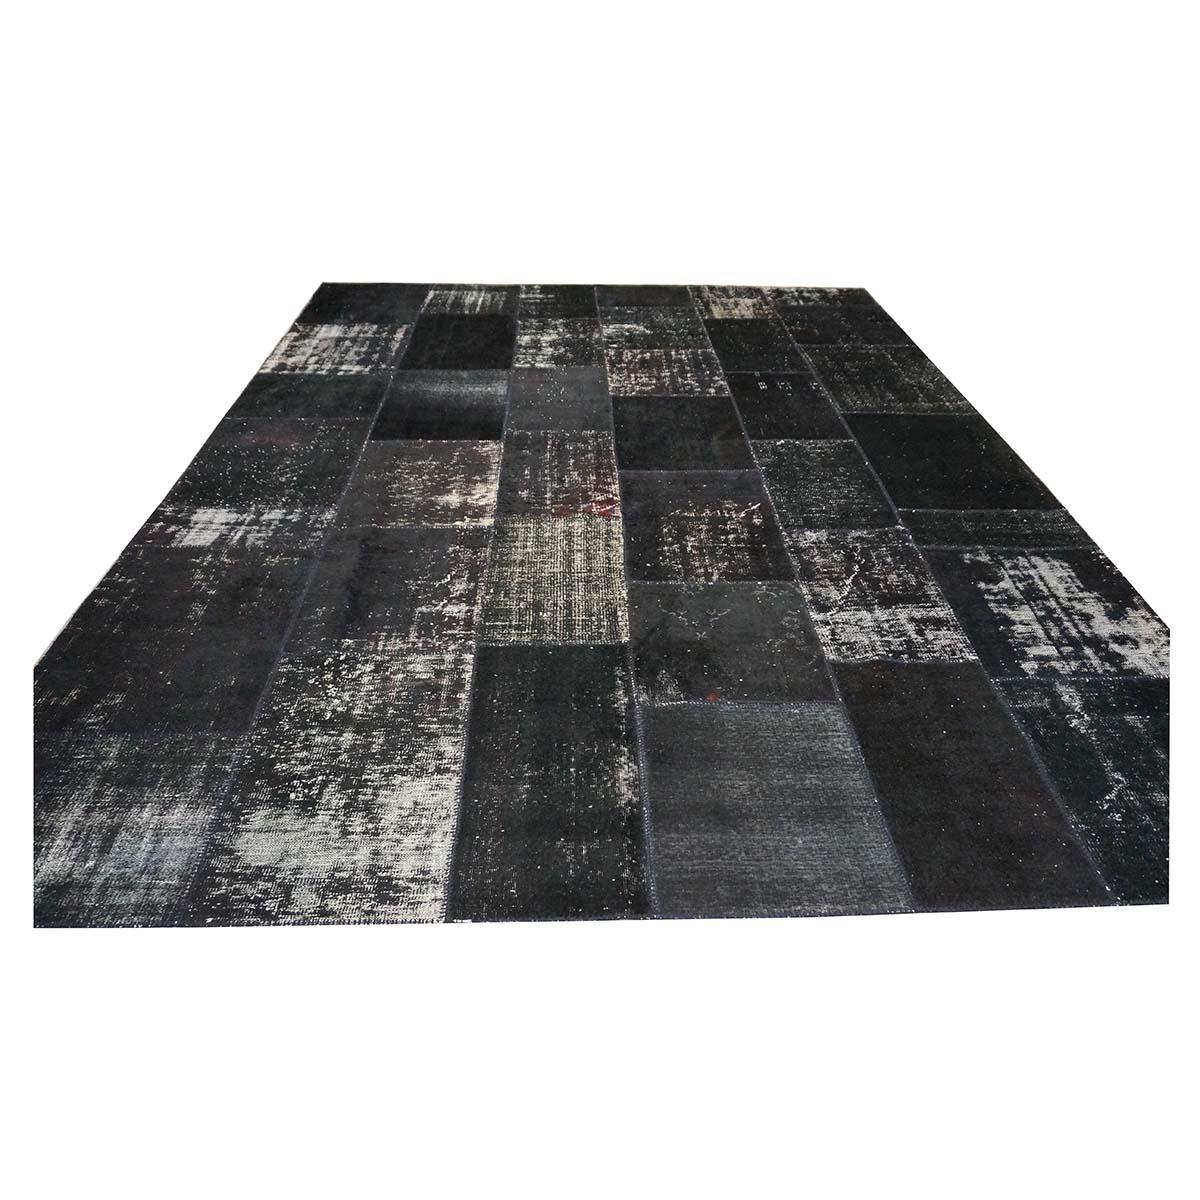  Ashly Fine Rugs präsentiert einen türkischen Vintage-Patchwork-Teppich im Format 10x13. Dieser Teppich ist eine Kombination aus mehreren handgefertigten türkischen Vintage-Teppichen, die meisterhaft zugeschnitten und zusammengenäht wurden, um einen